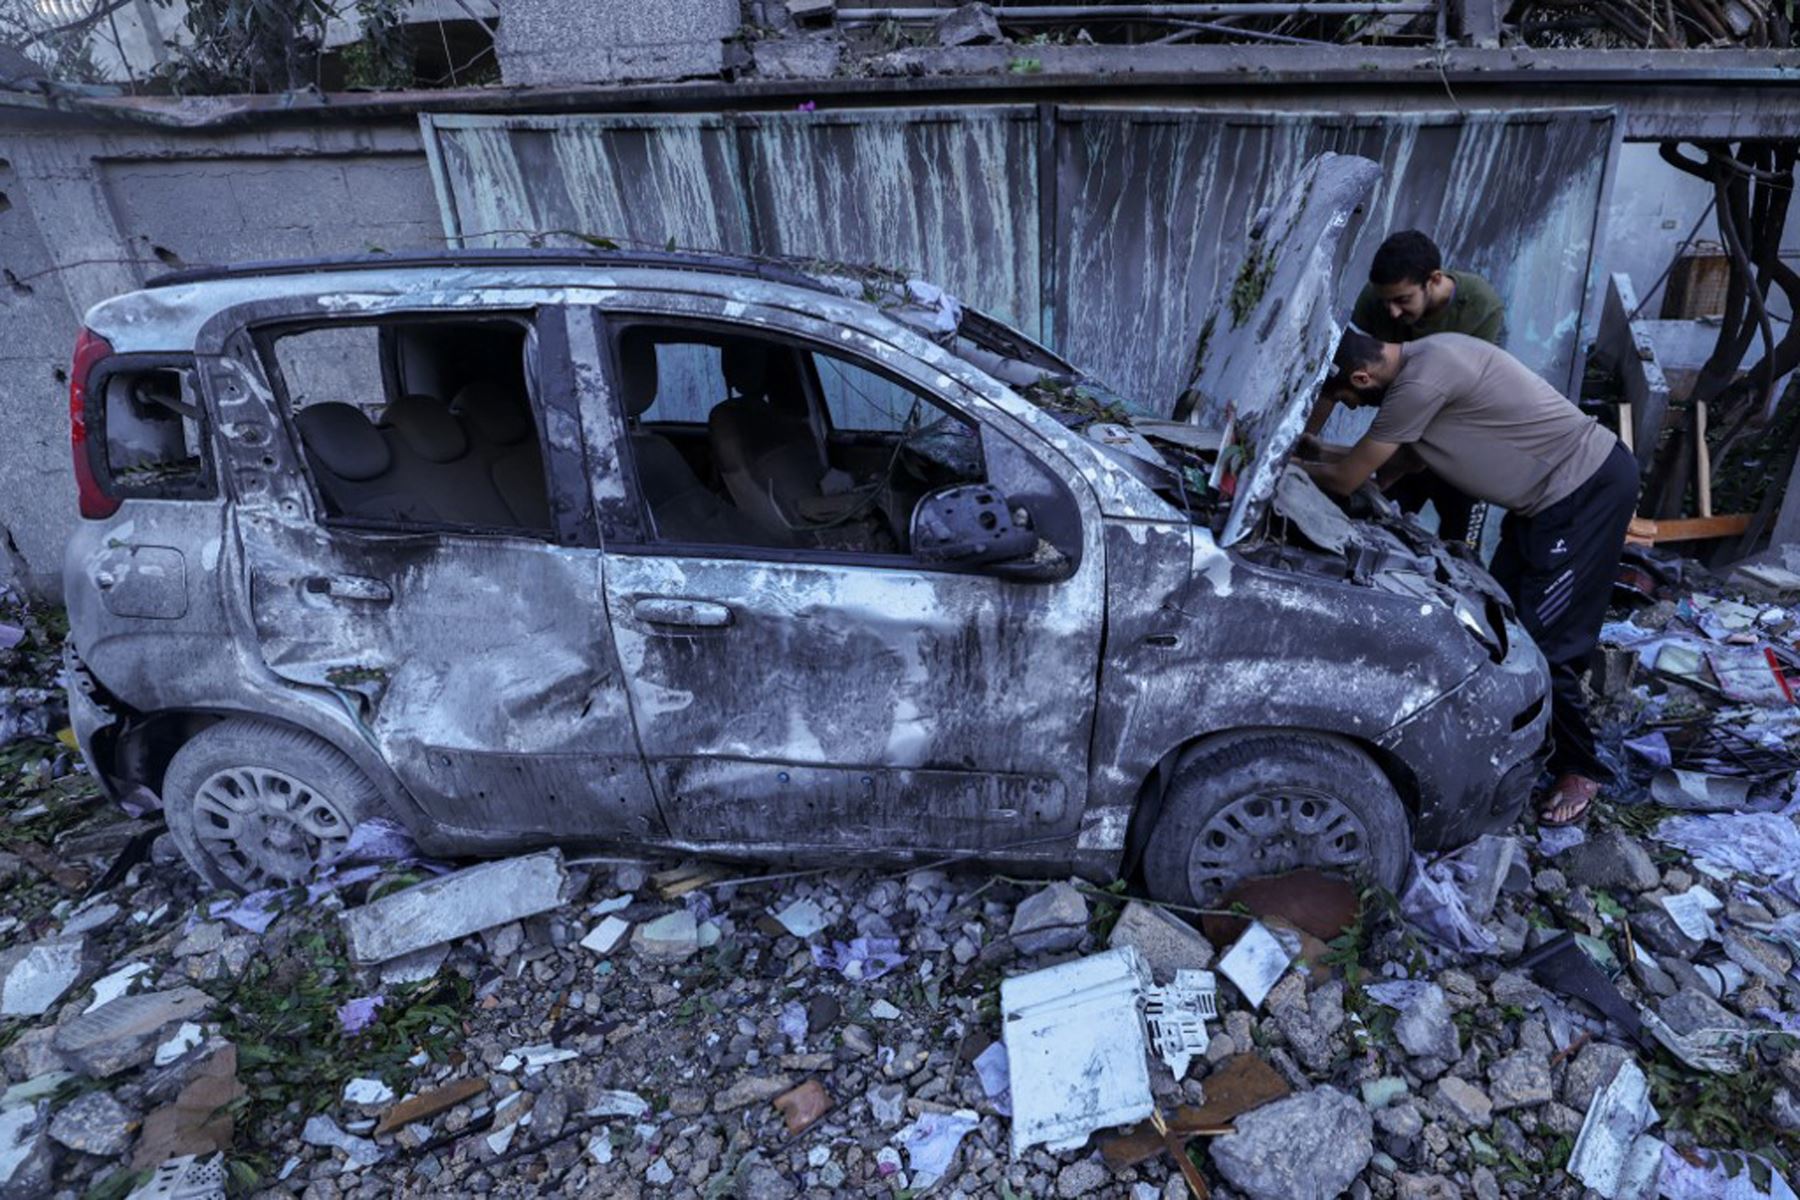 Los palestinos inspeccionan su automóvil destruido después de un ataque aéreo israelí en el campo de refugiados de Rafah, en el sur de la Franja de Gaza.
Foto: AFP